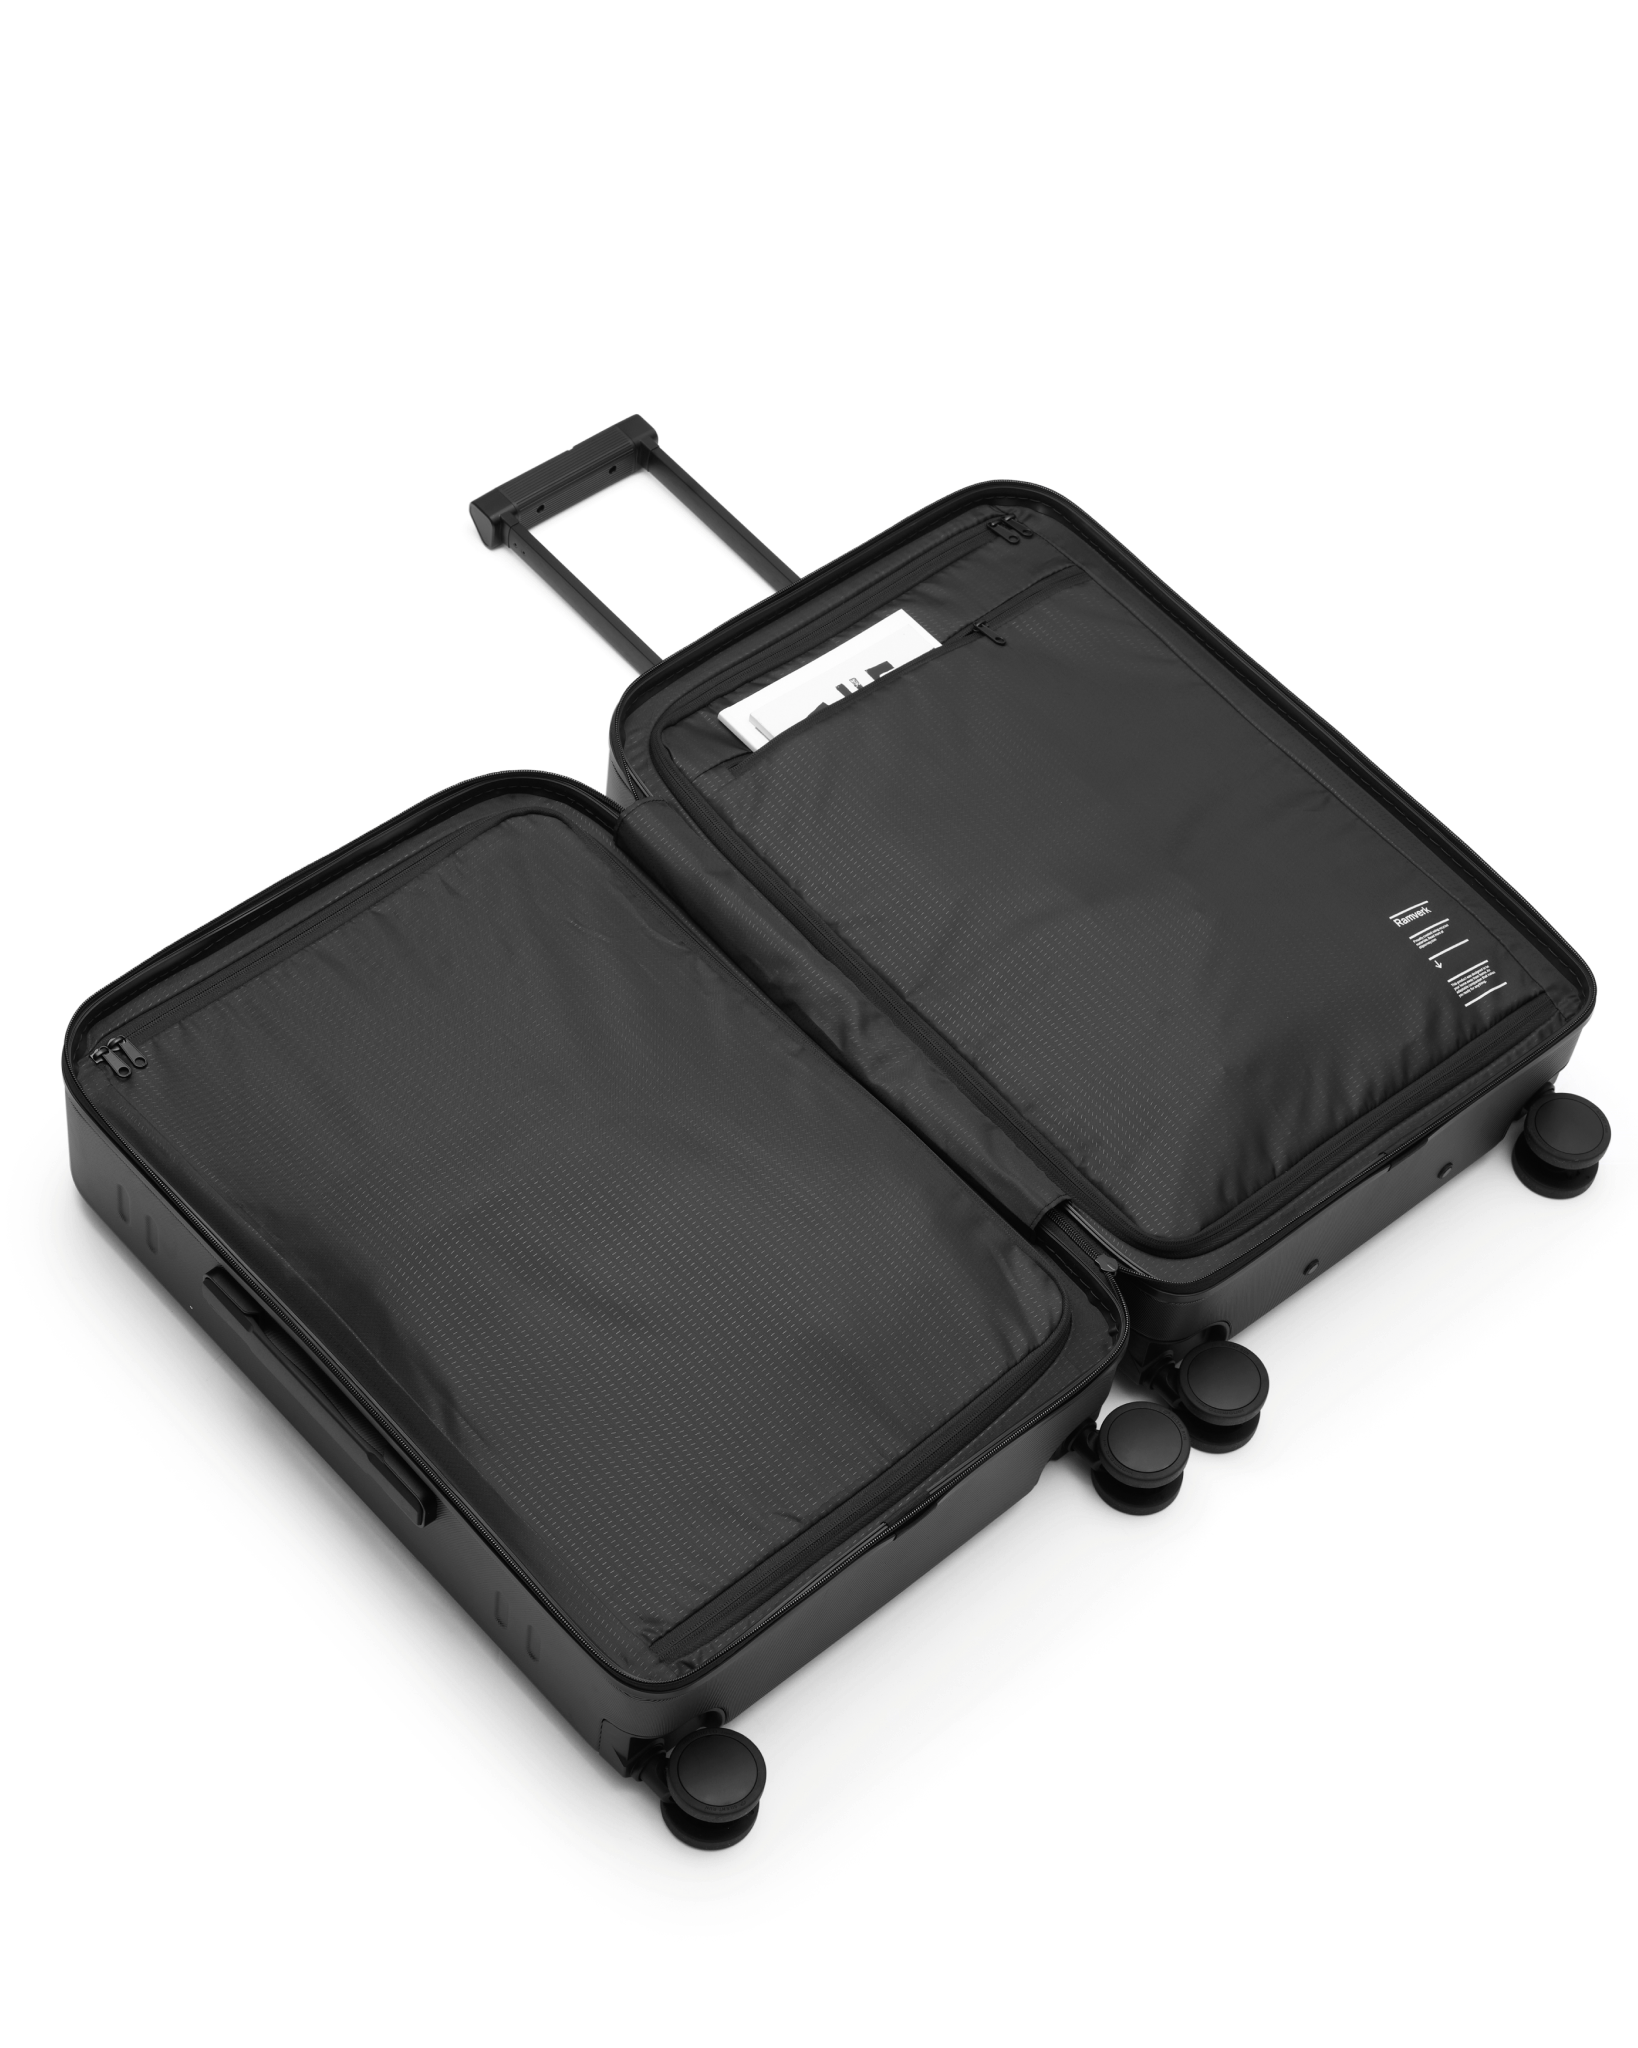 Ramverk Check-in Luggage Medium